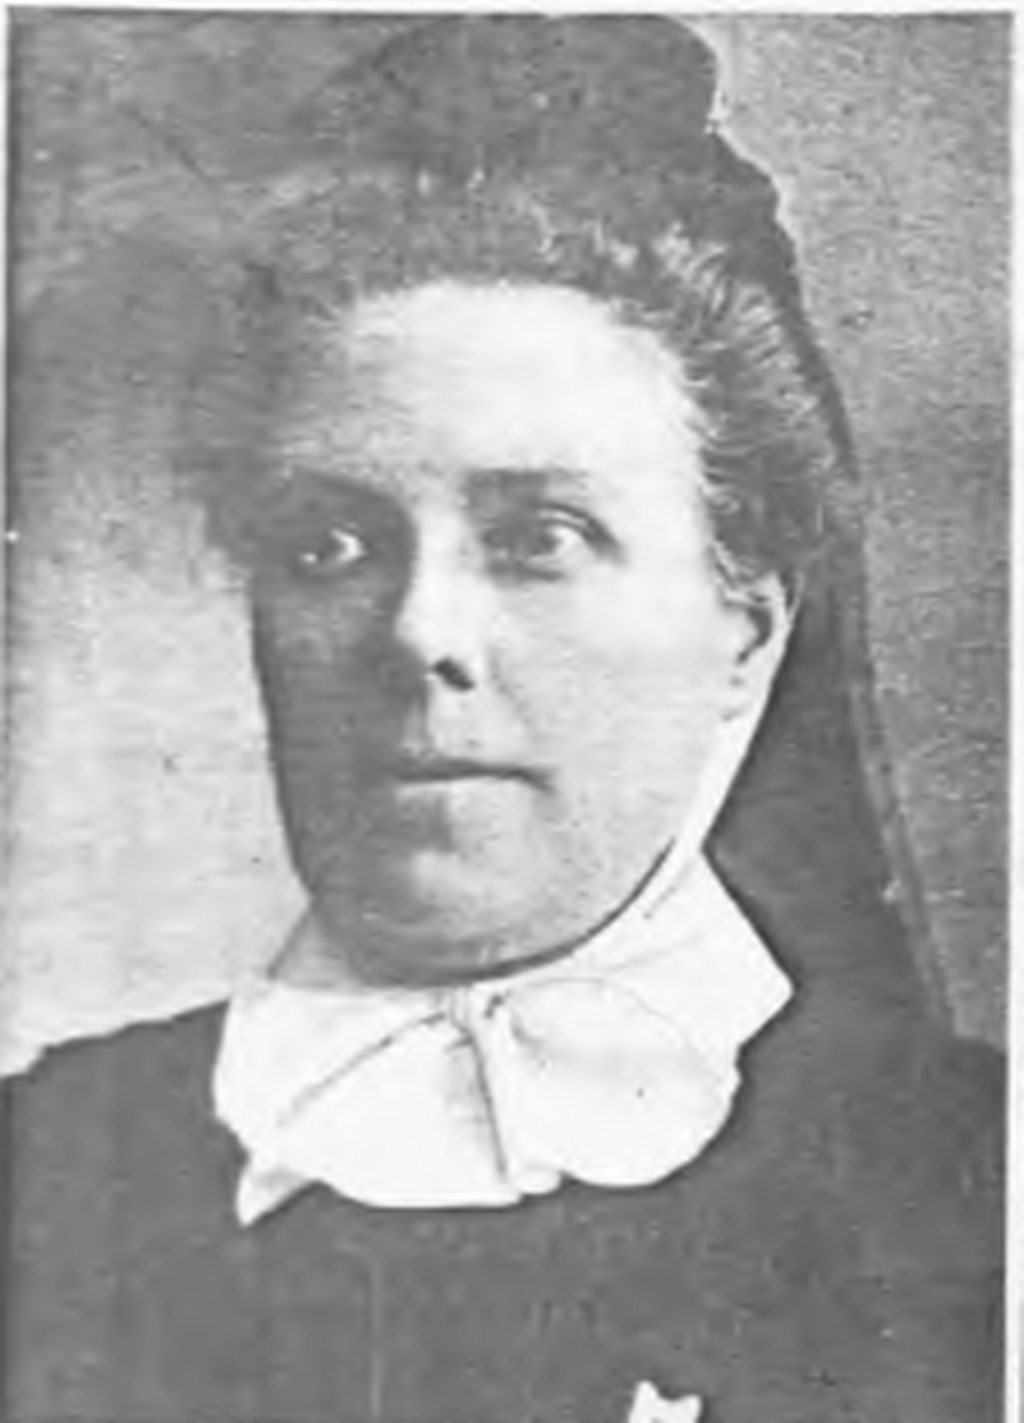 Sister E.J. Todd in 1904